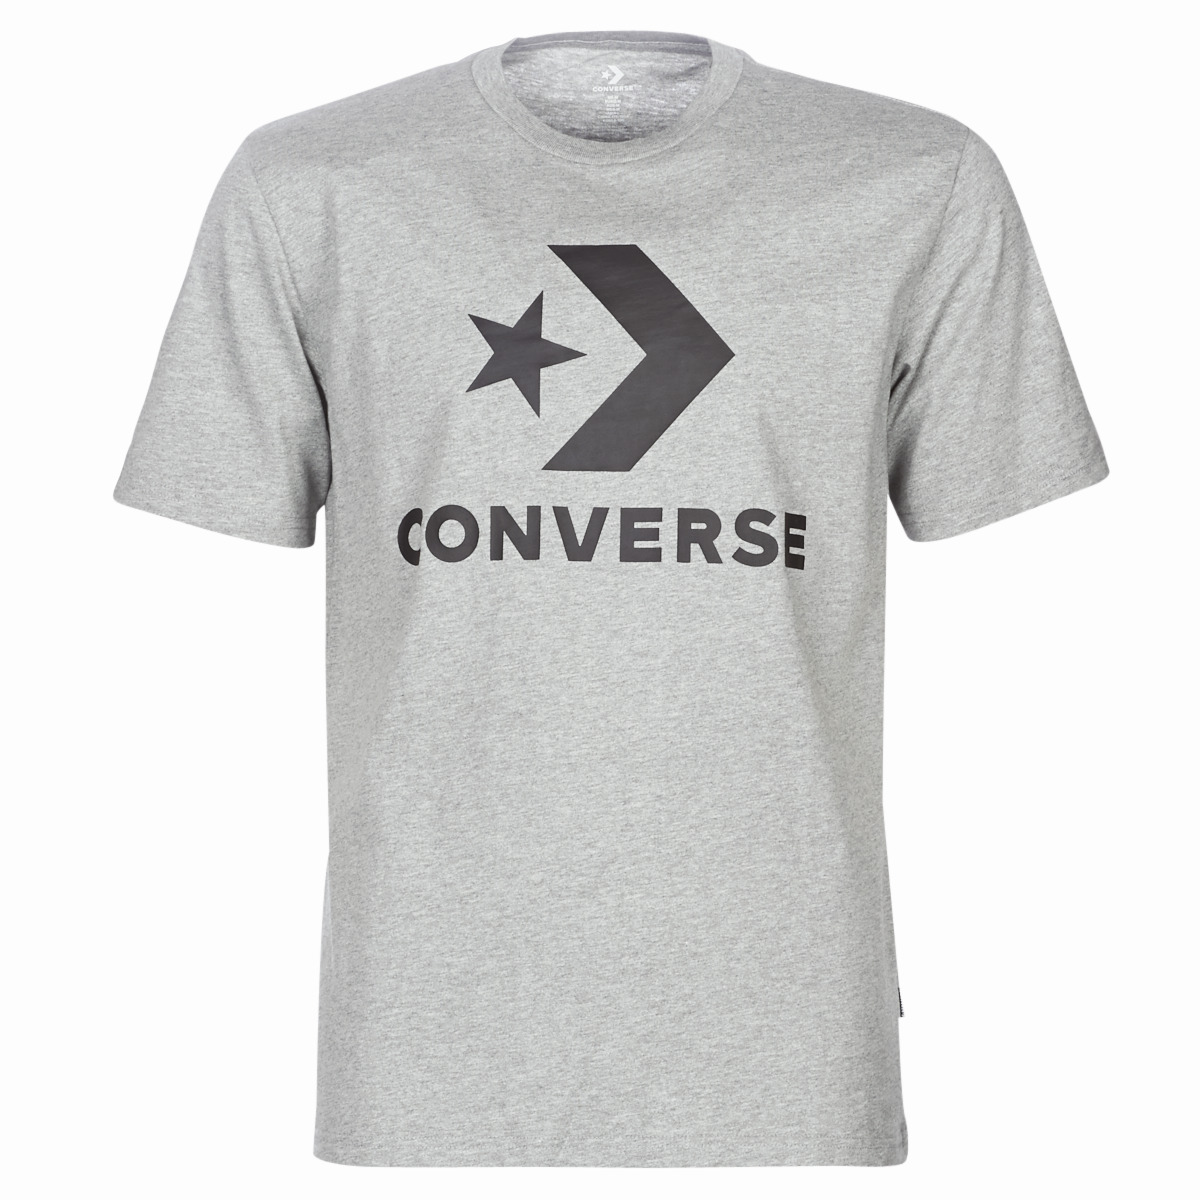 converse t shirt dress